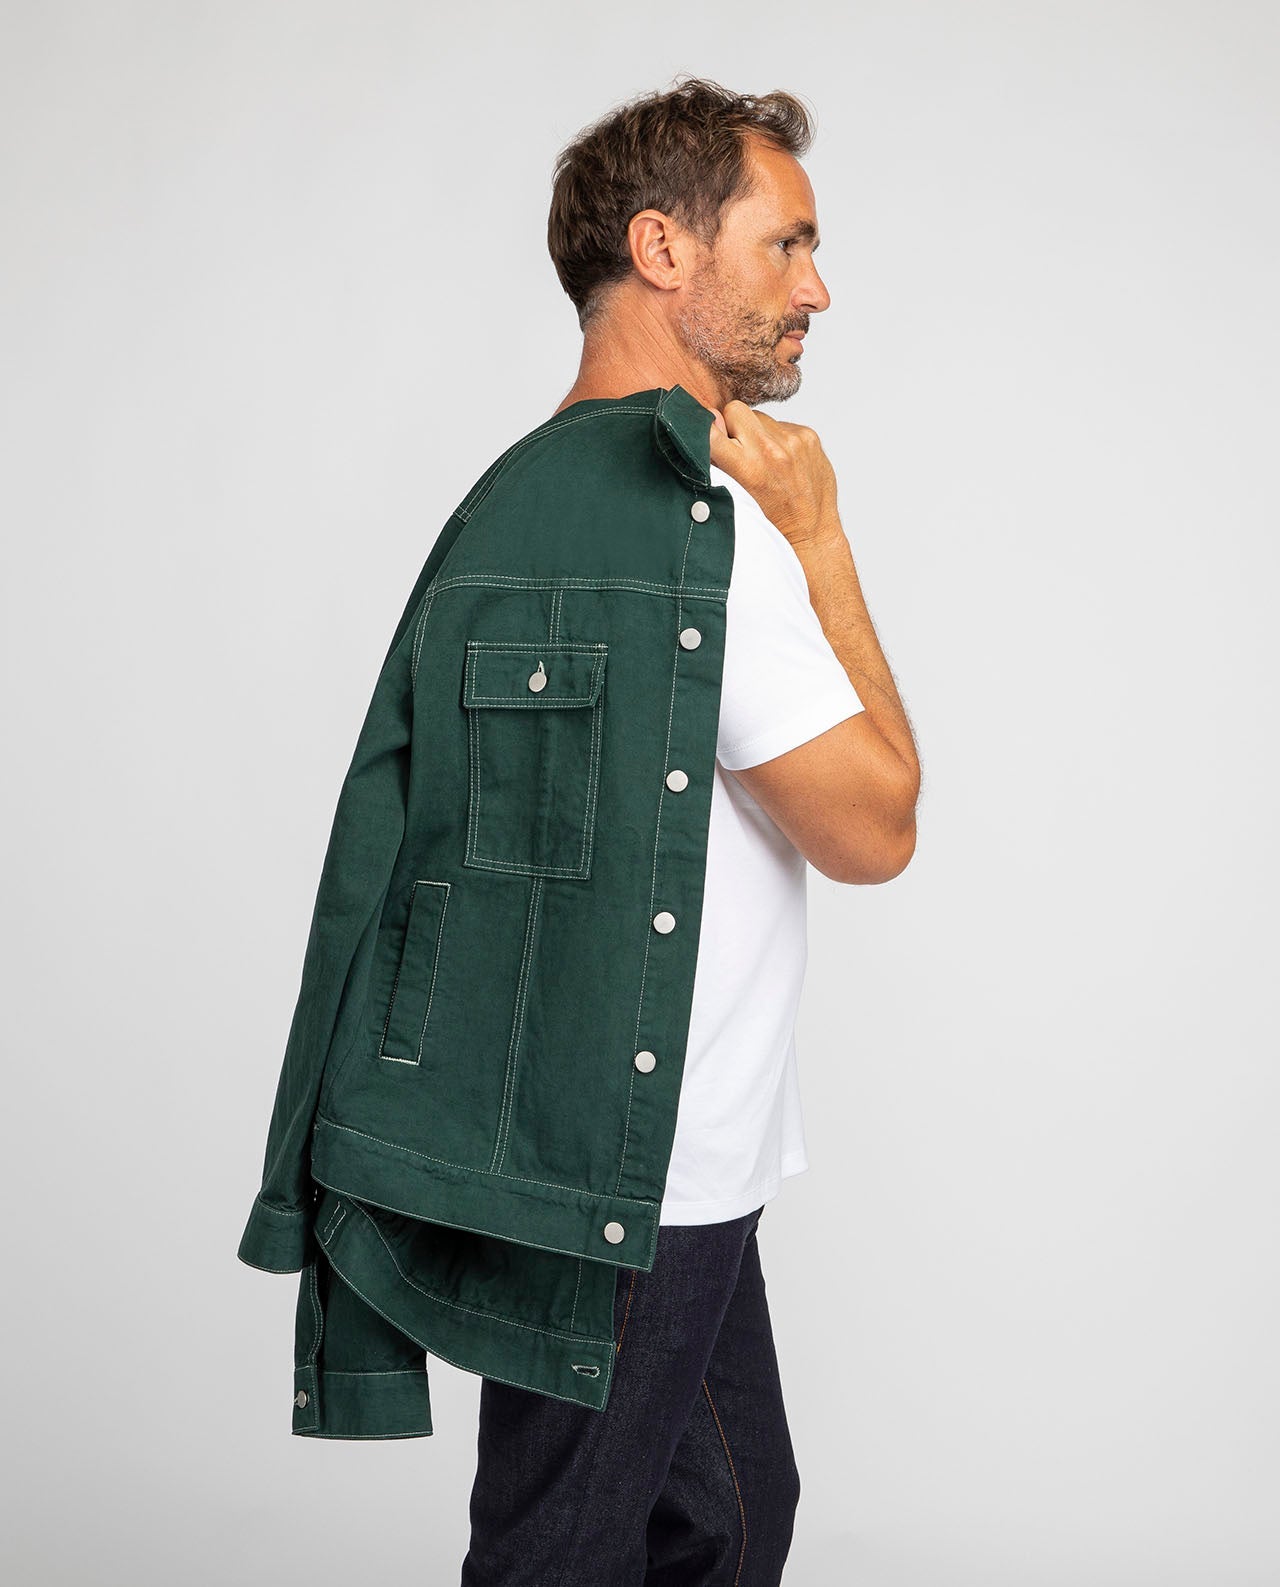 marché commun noyoco veste homme coton biologique vert coutures surpiqûres apparentes denim éco-responsable éthique fabriquée en Europe